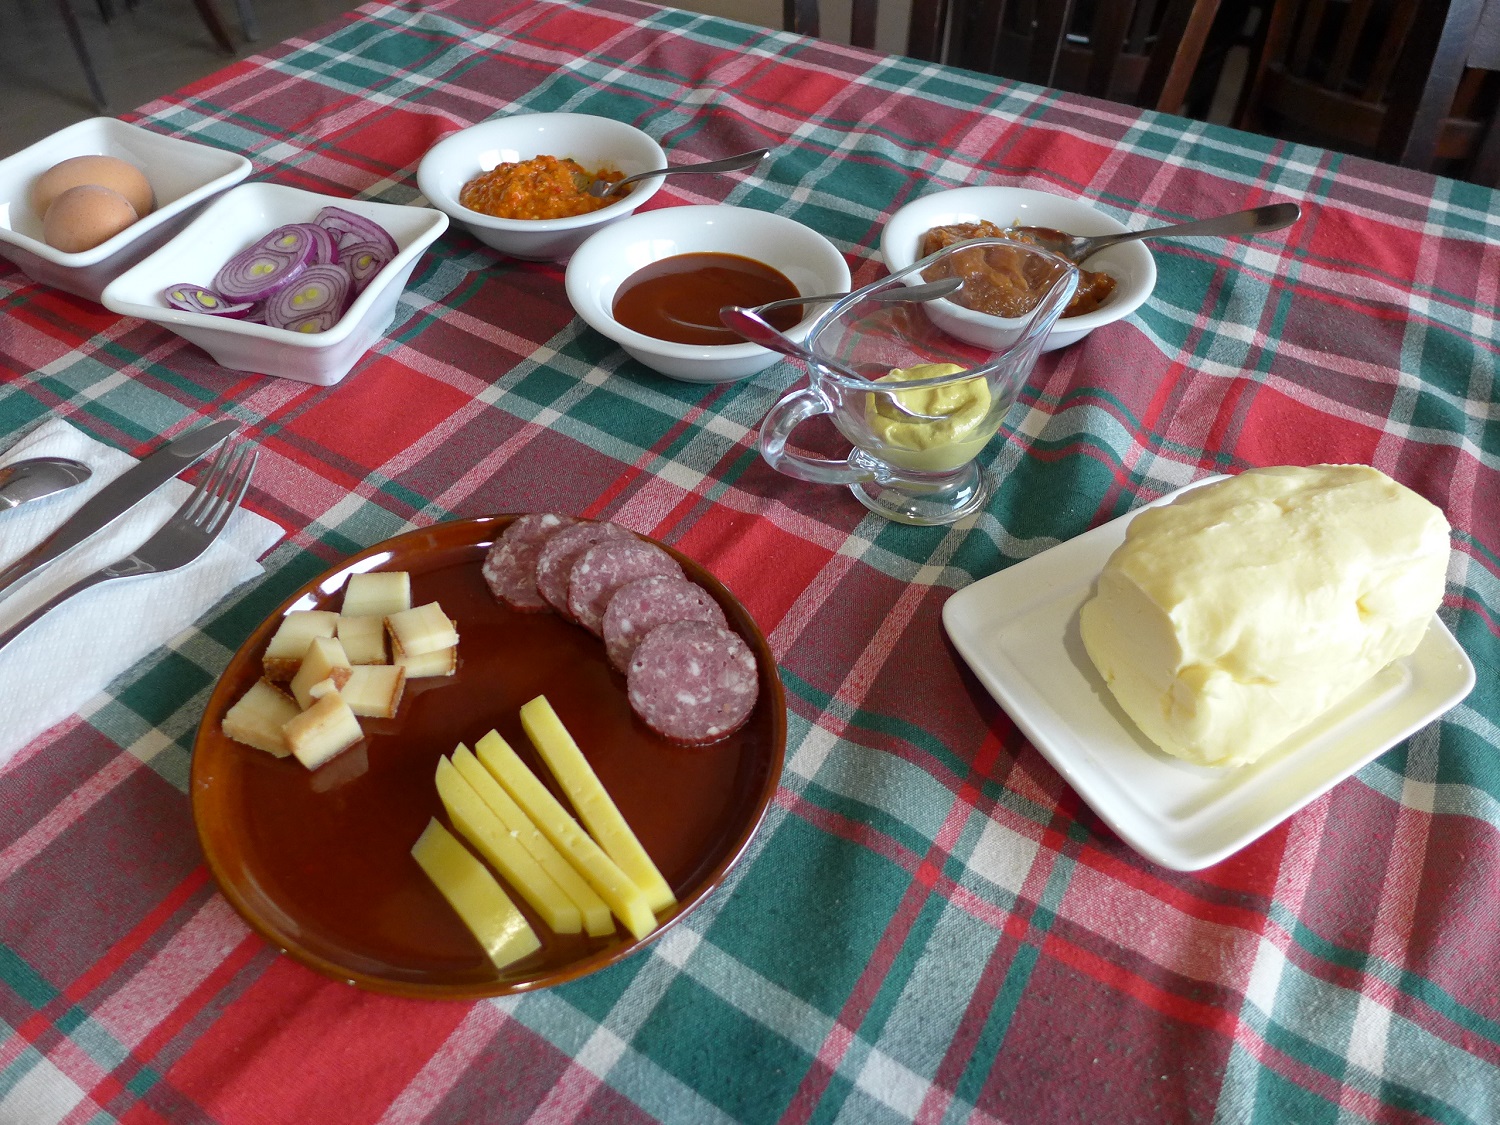 Petit déjeuner traditionnel à la pension La Ferma : pain, confiture, beurre, mais aussi fromage, oignons, saucisson, etc.